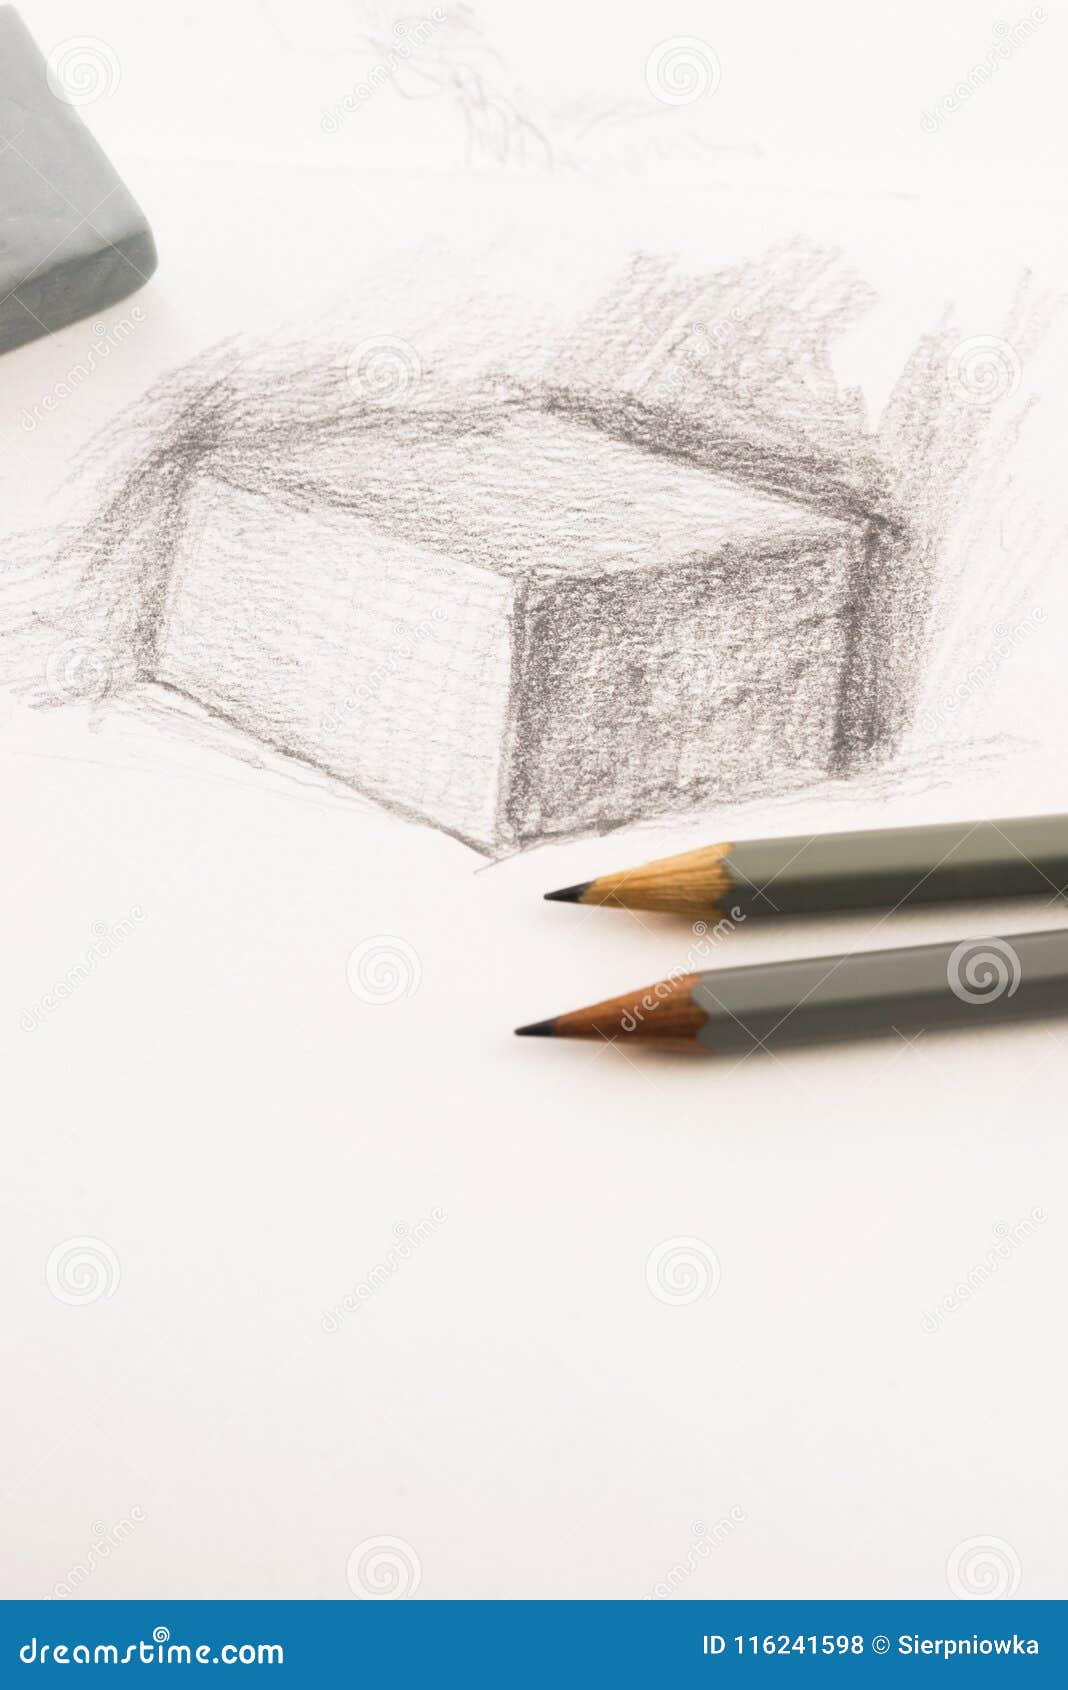 Dessin D'artiste Par Le Crayon Sur Le Papier Photo stock - Image